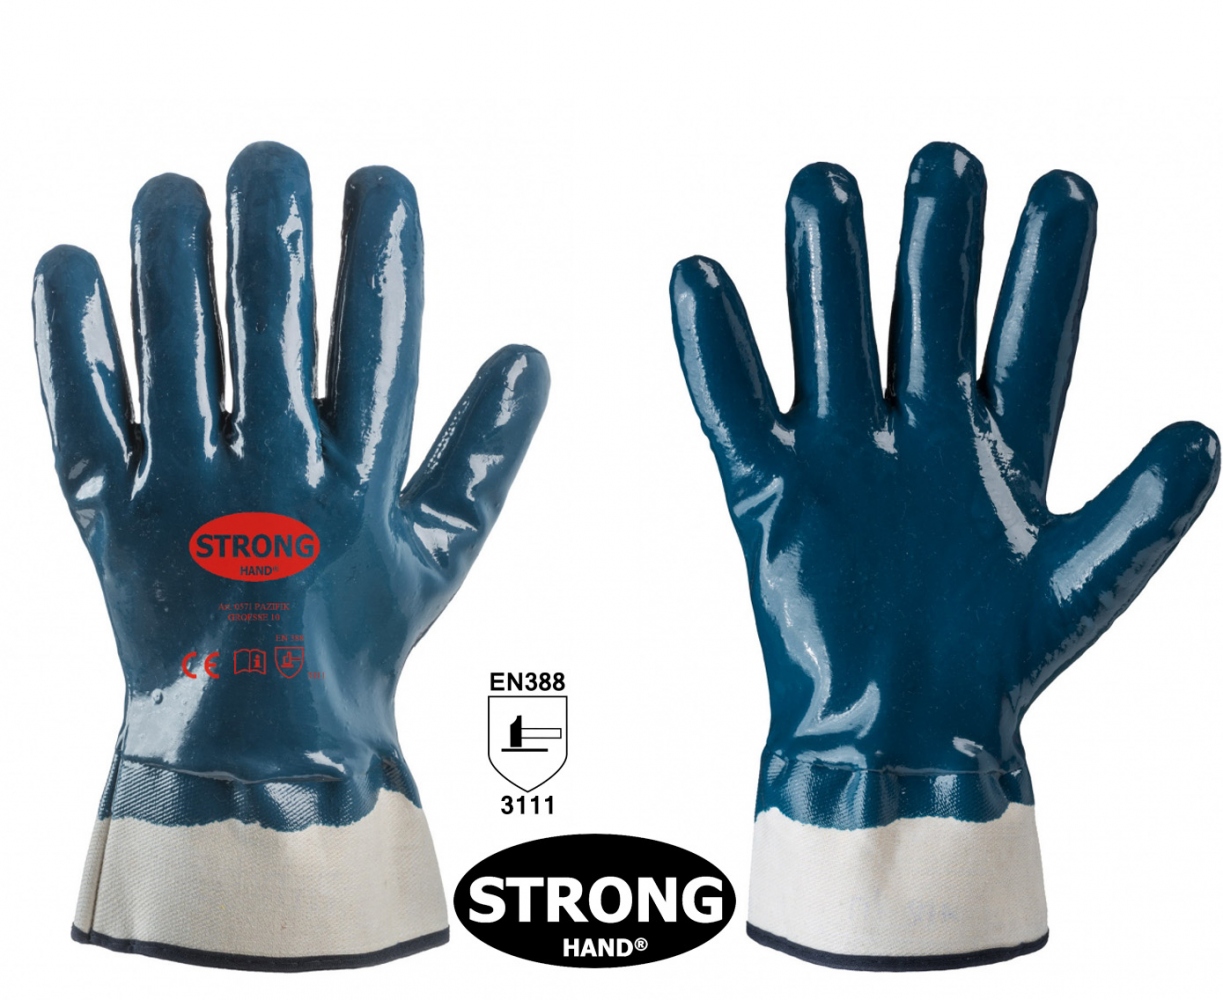 pics/Feldtmann 2016/Handschutz/stronghand-0571-pazifik-water-oil-repellent-nitrile-safety-gloves.jpg